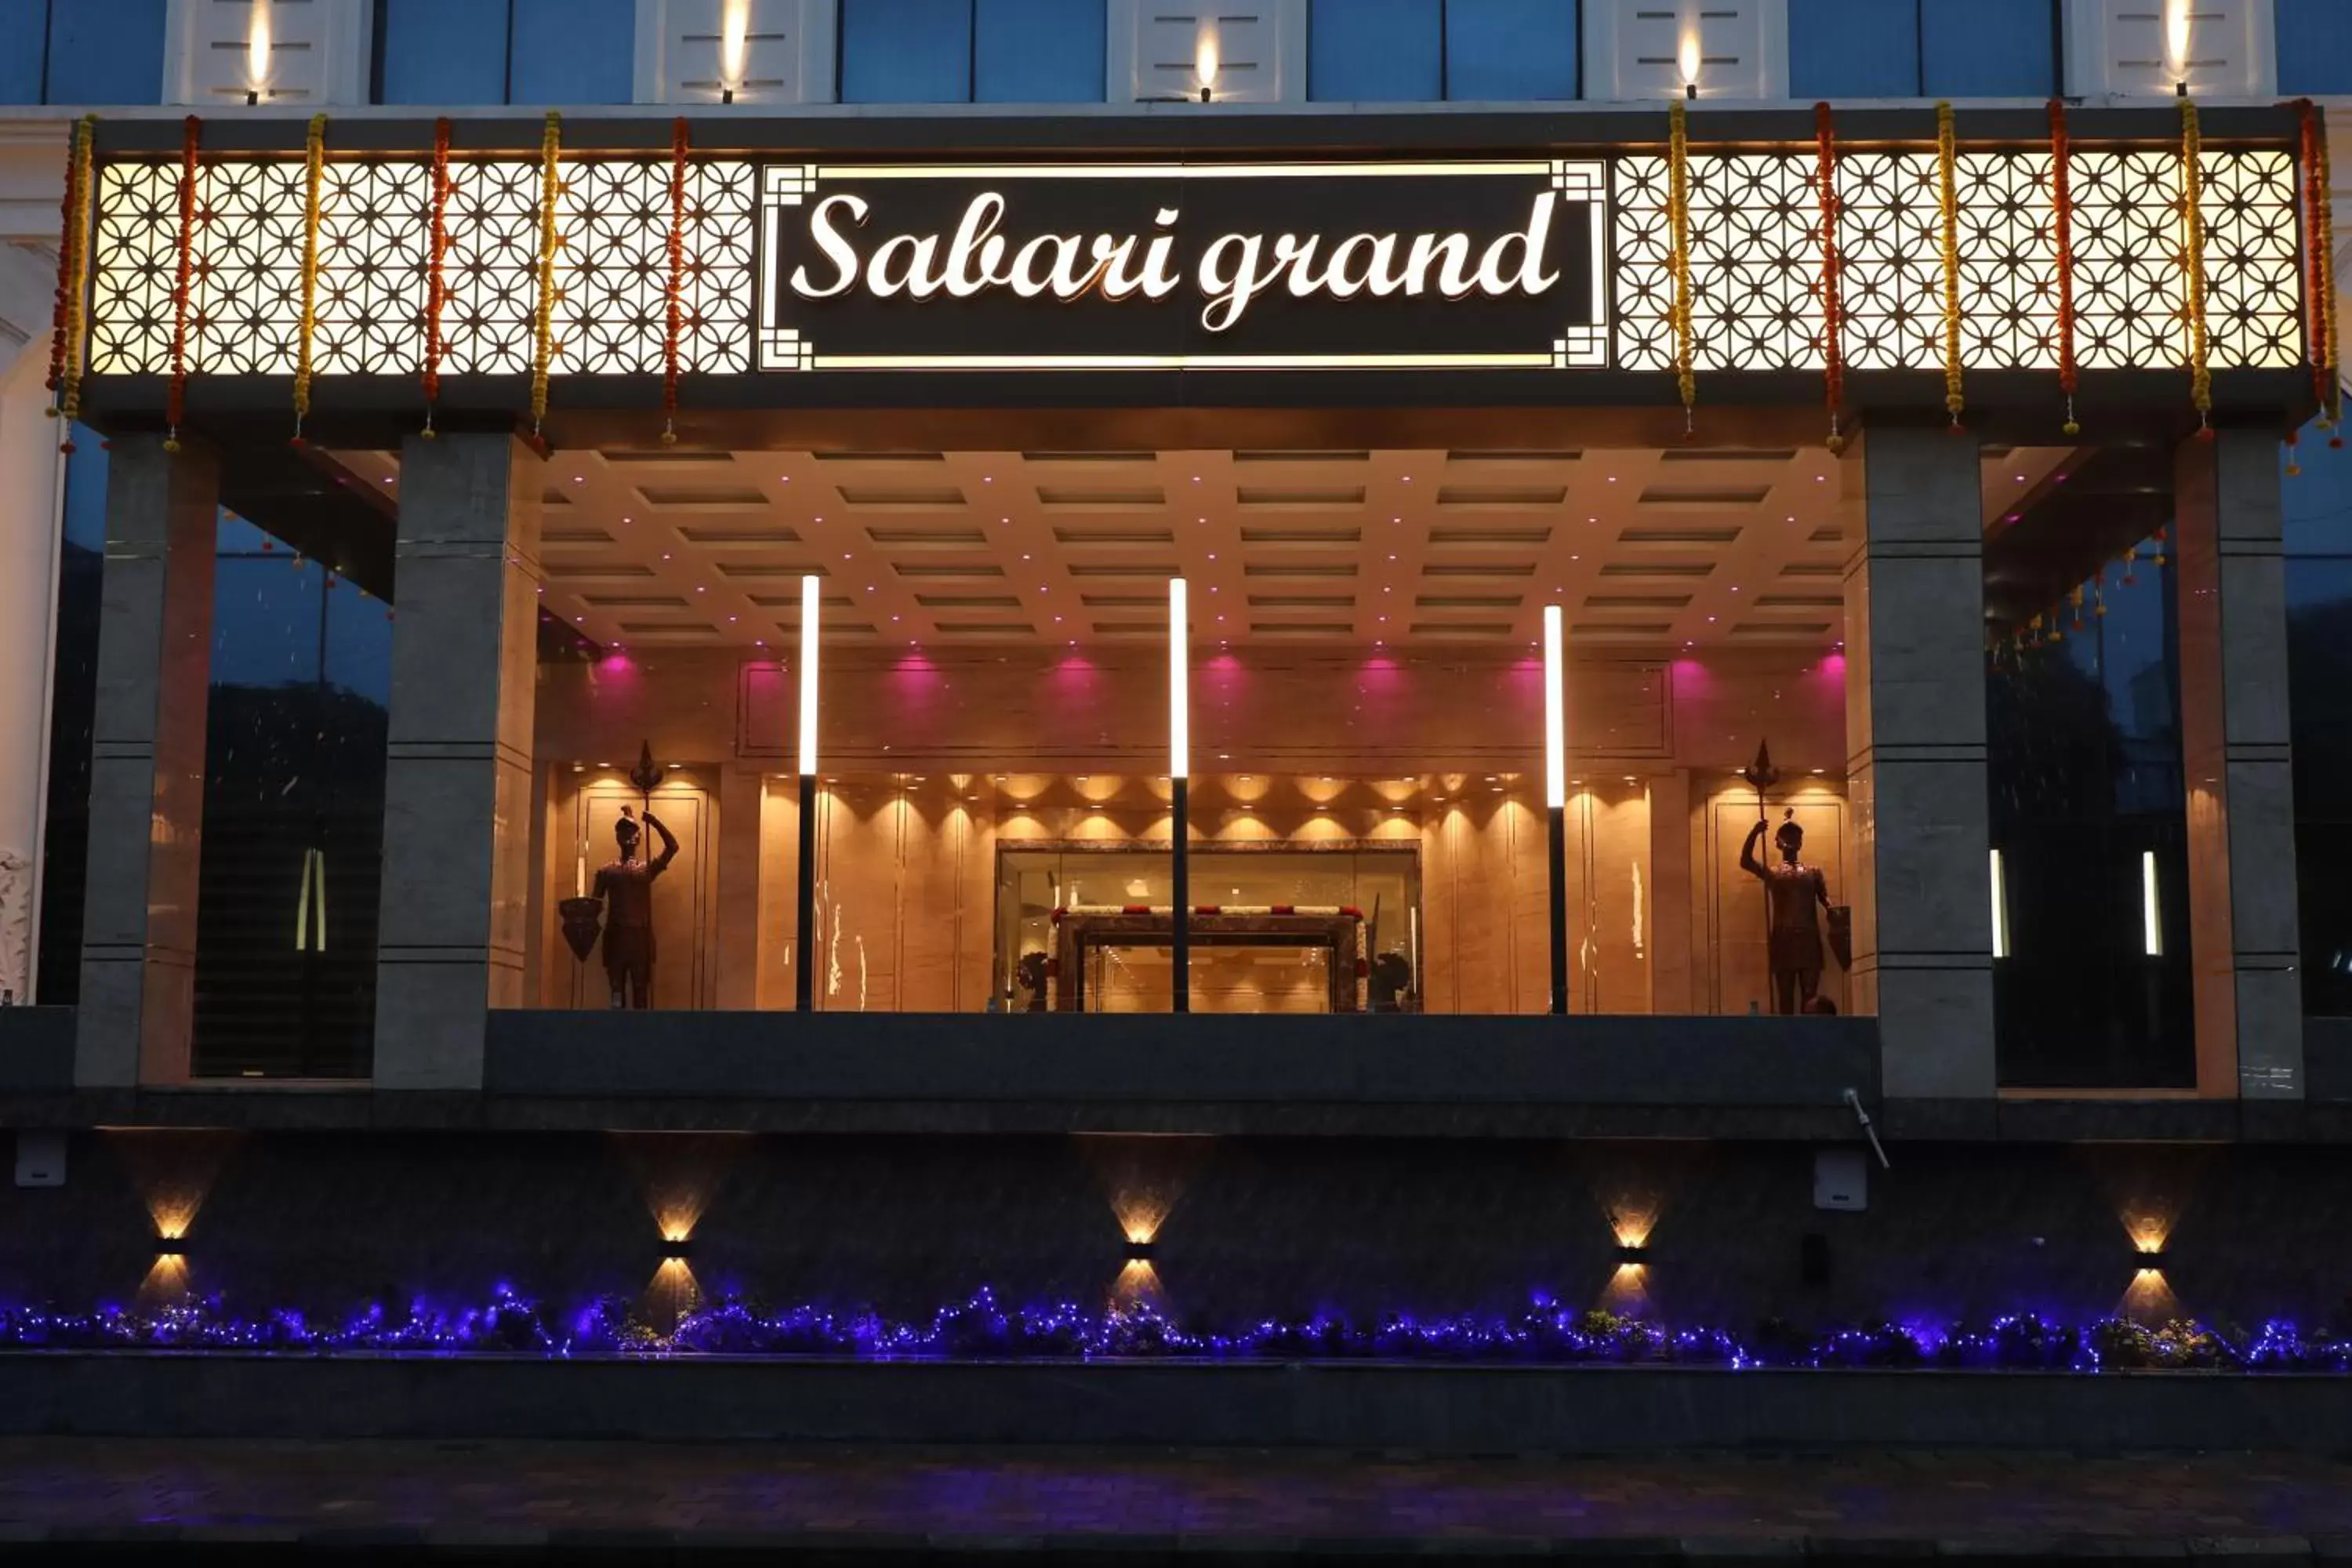 Facade/entrance in Quality Inn Sabari